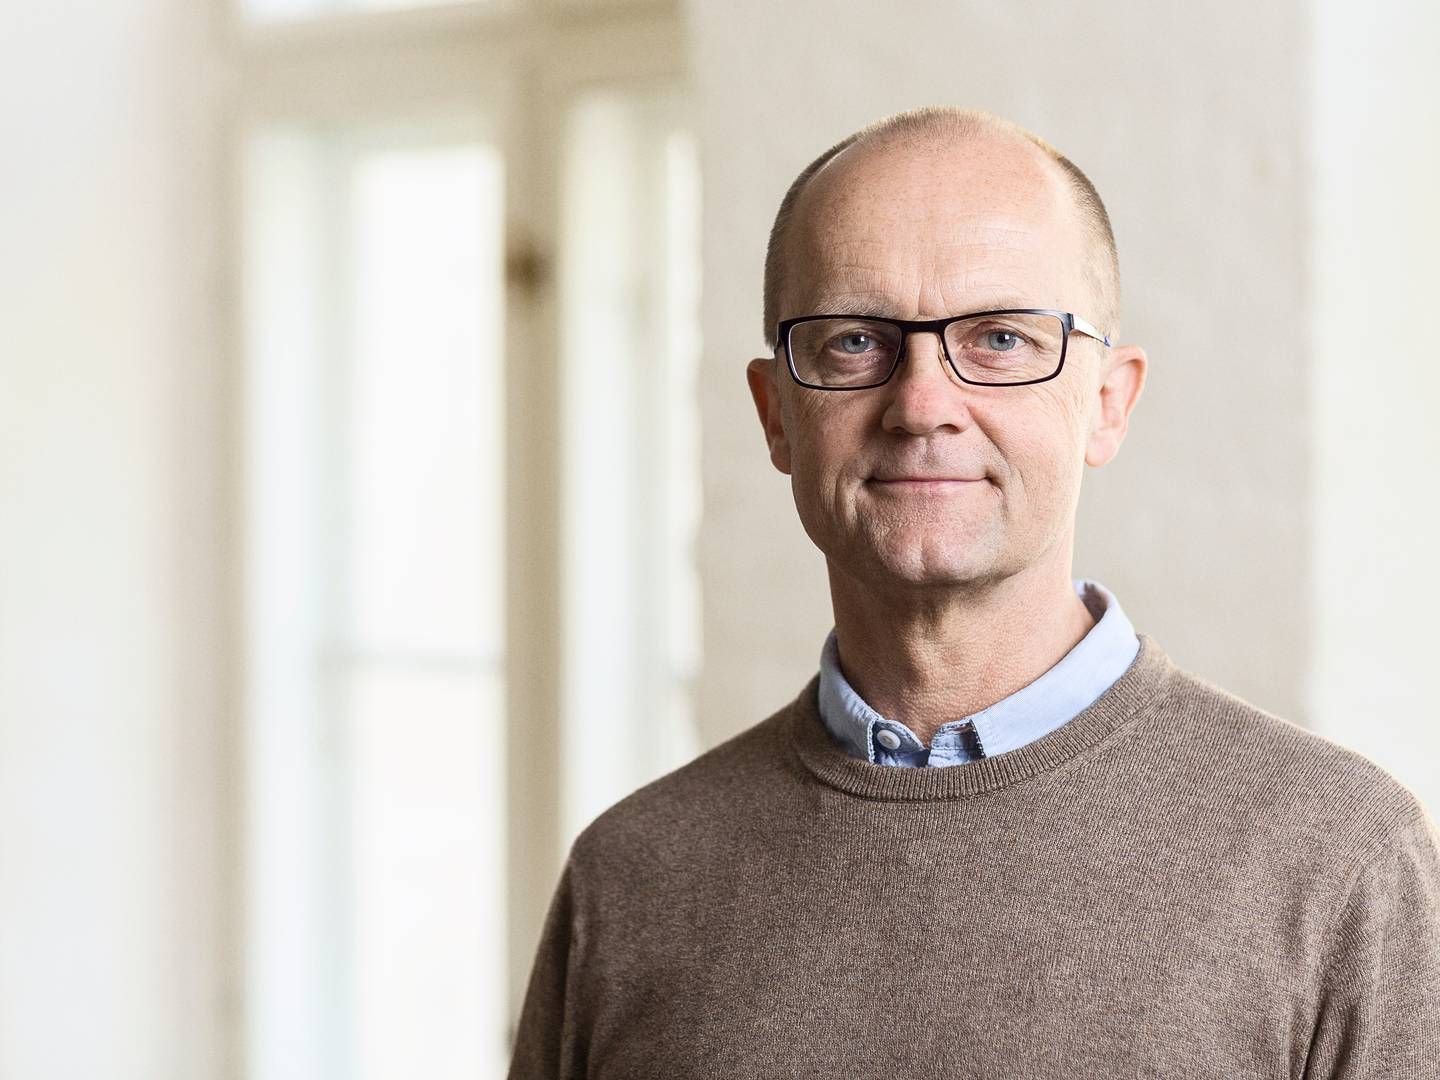 Fejl i bankernes gældsinddrivelse fører en række andre problemer med sig, vurderer Morten Bruun Pedersen, cheføkonom i Forbrugerrådet Tænk. | Foto: Pr